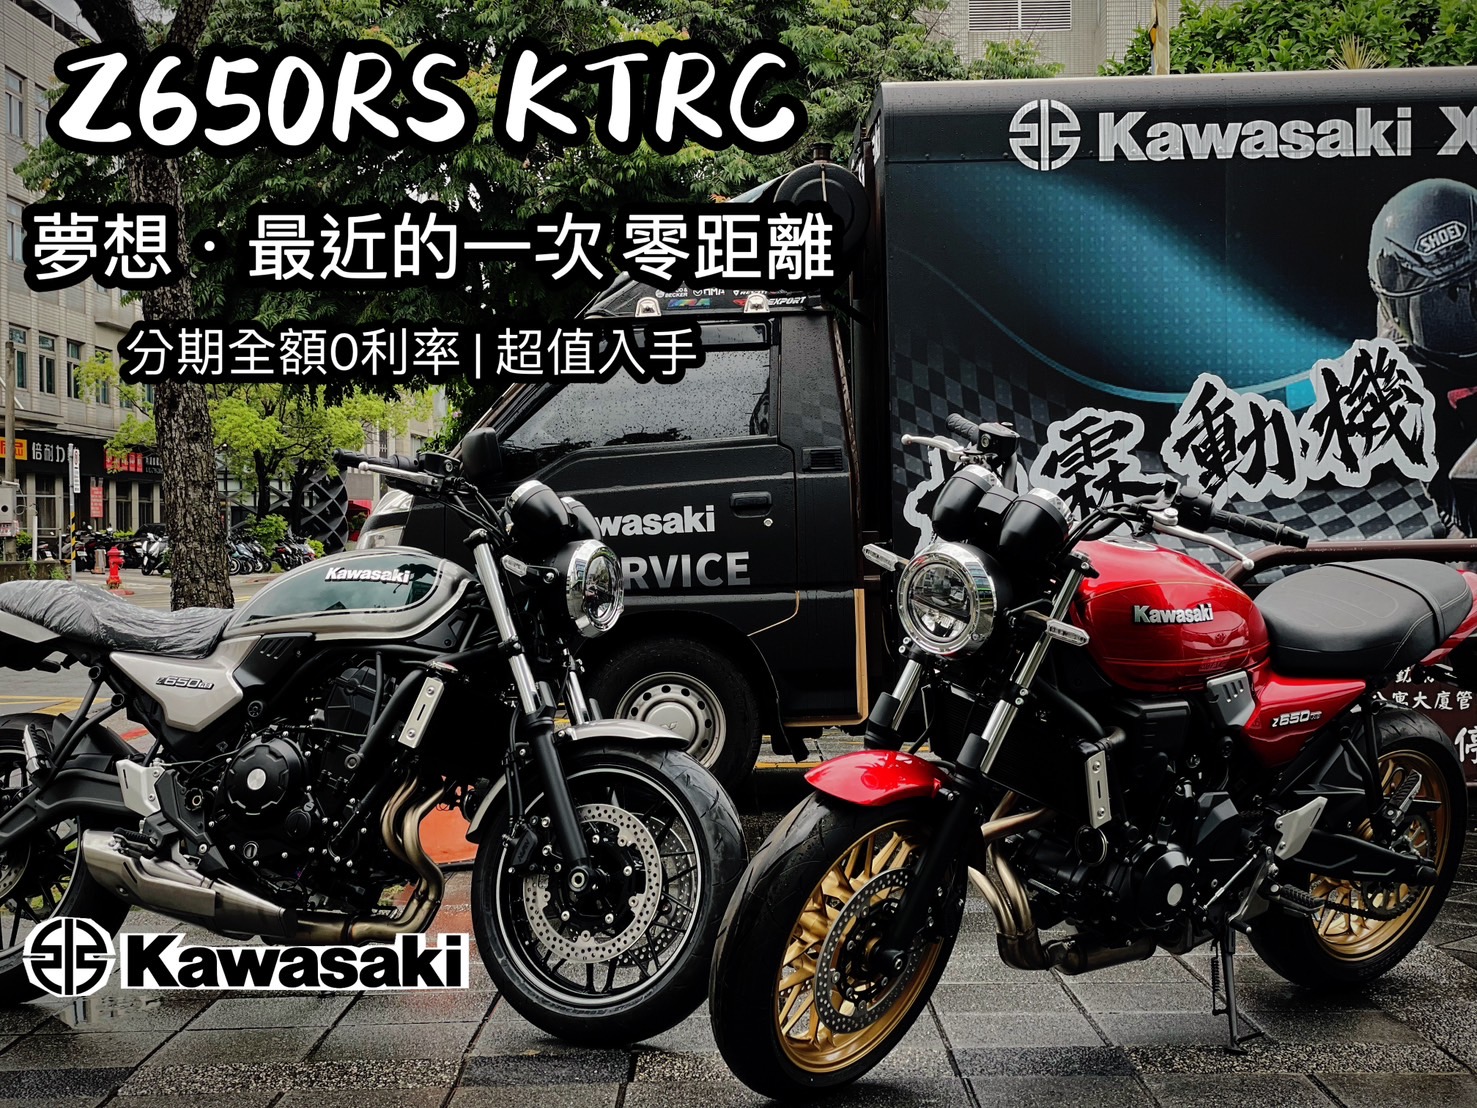 KAWASAKI Z650新車出售中 台灣 Kawasaki 內湖展示中心 Z650RS KTRC  | 柏霖動機Kawasak職人-阿弘